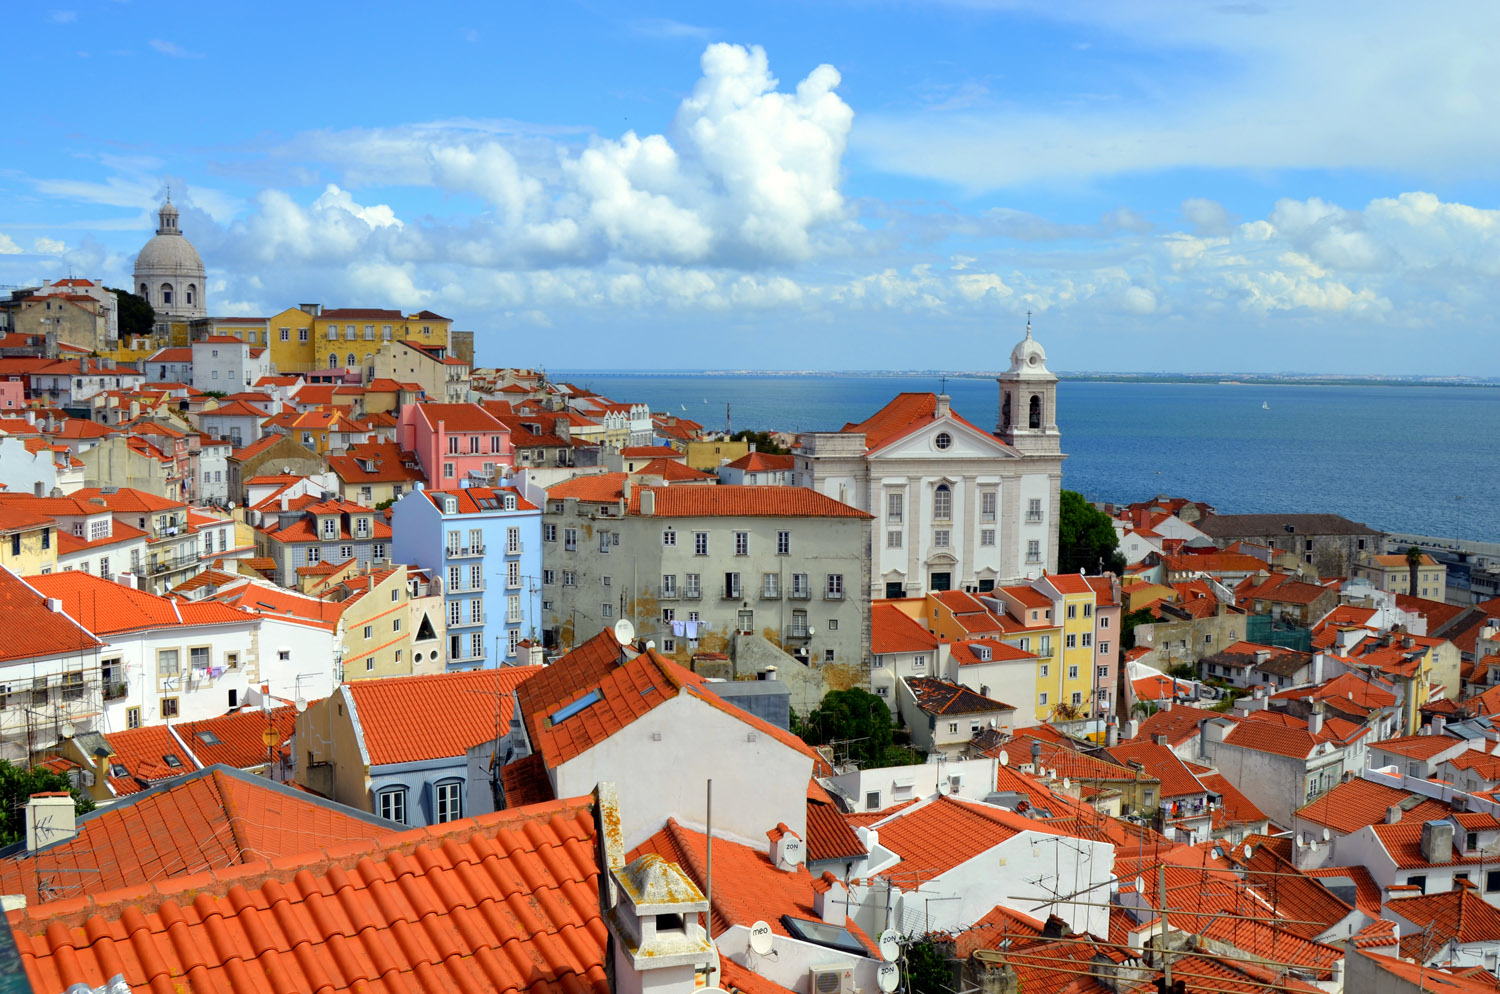 Lizbona - stolica w klimacie fado